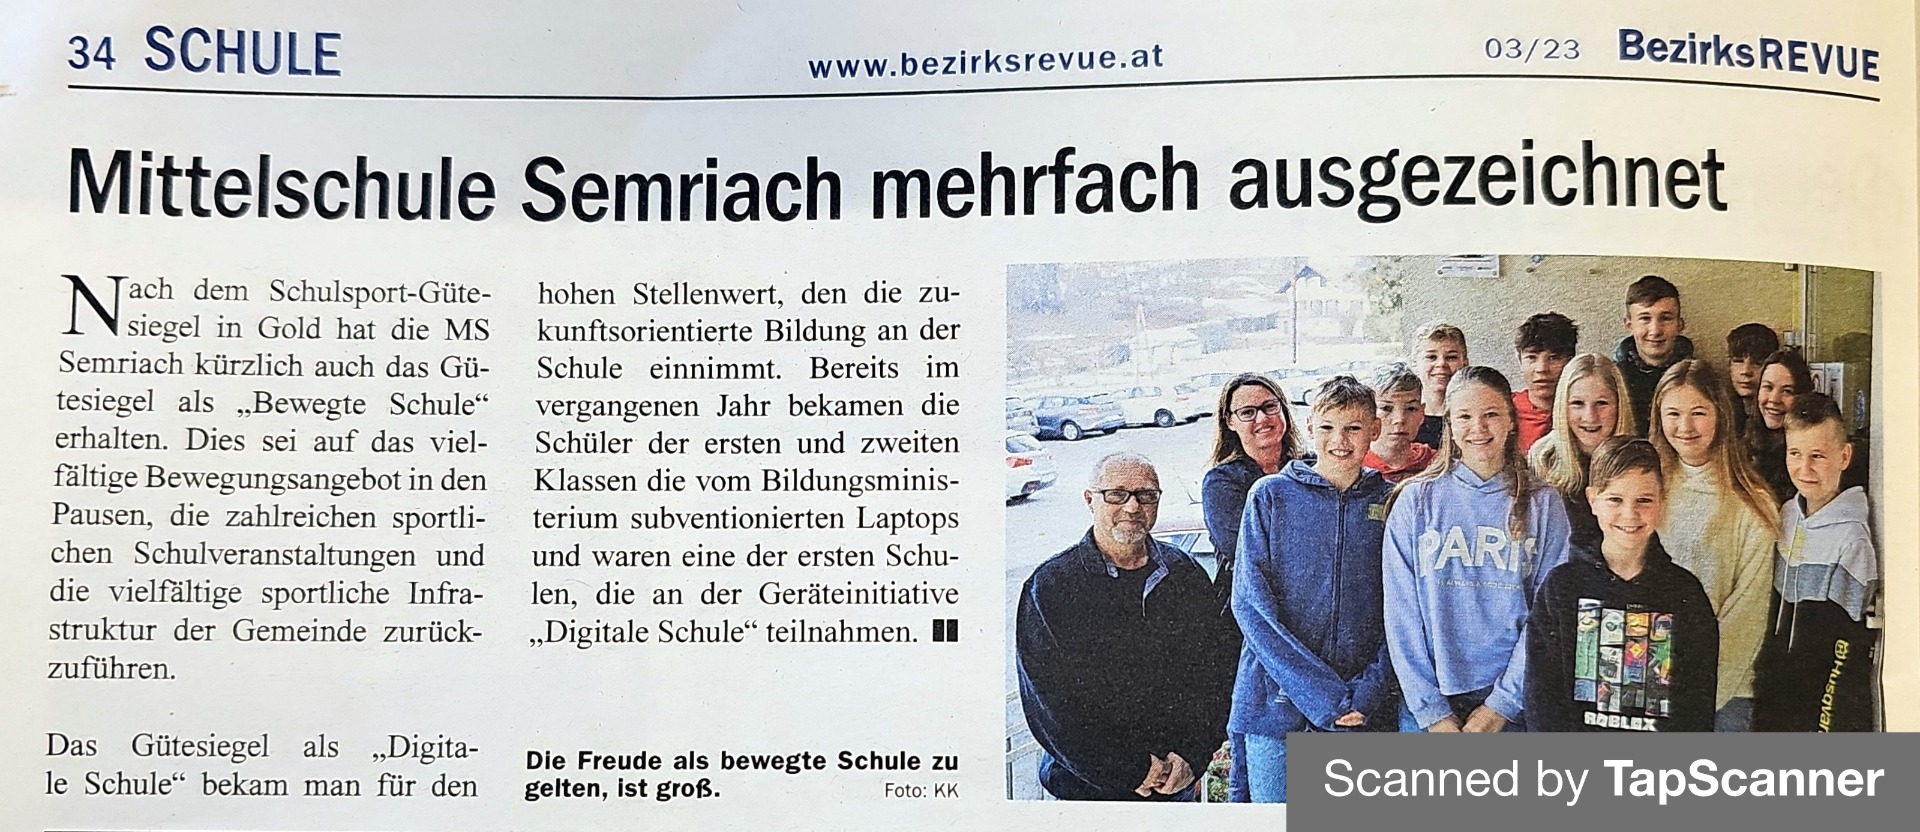 MS Semriach in der Presse - Bild 1